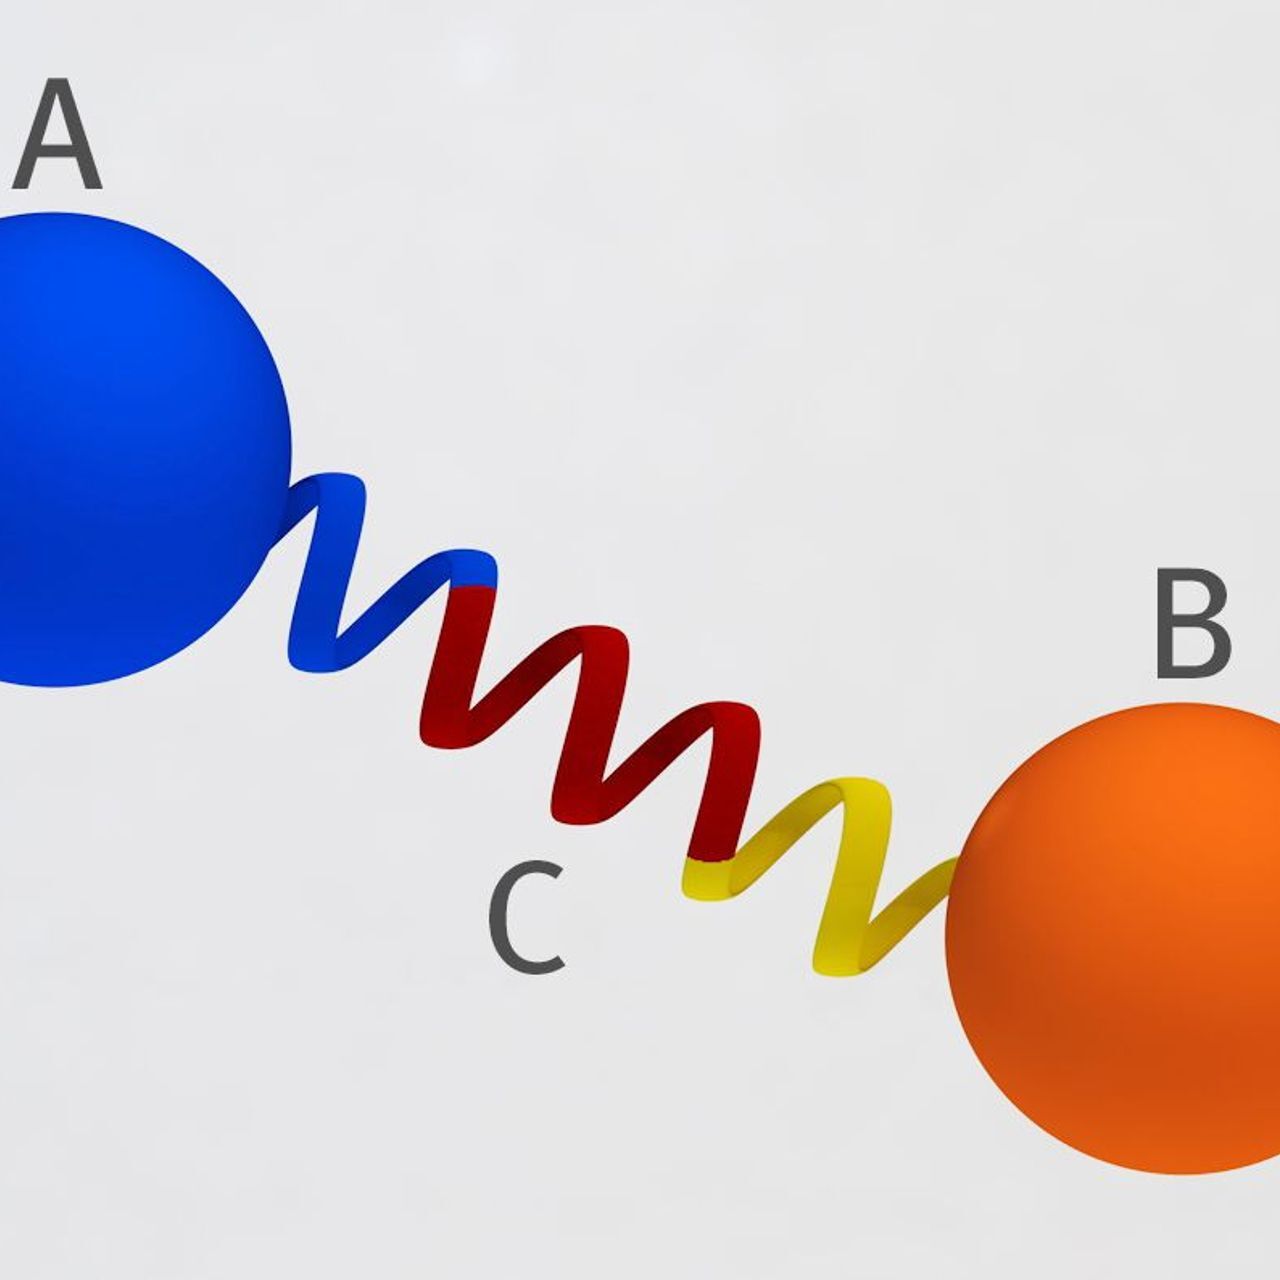 Représentation du principe du pont protéique développé au PSI en Suisse : deux protéines (A et B) sont reliées l'une à l'autre à une distance et à un angle fixes au moyen d'une spirale protéique rigide, de sorte qu'elles ne peuvent pas s'approcher l'une de l'autre et ne peuvent pas interagir (graphique : Mahir Dzambegovic/Institut Paul Scherrer)